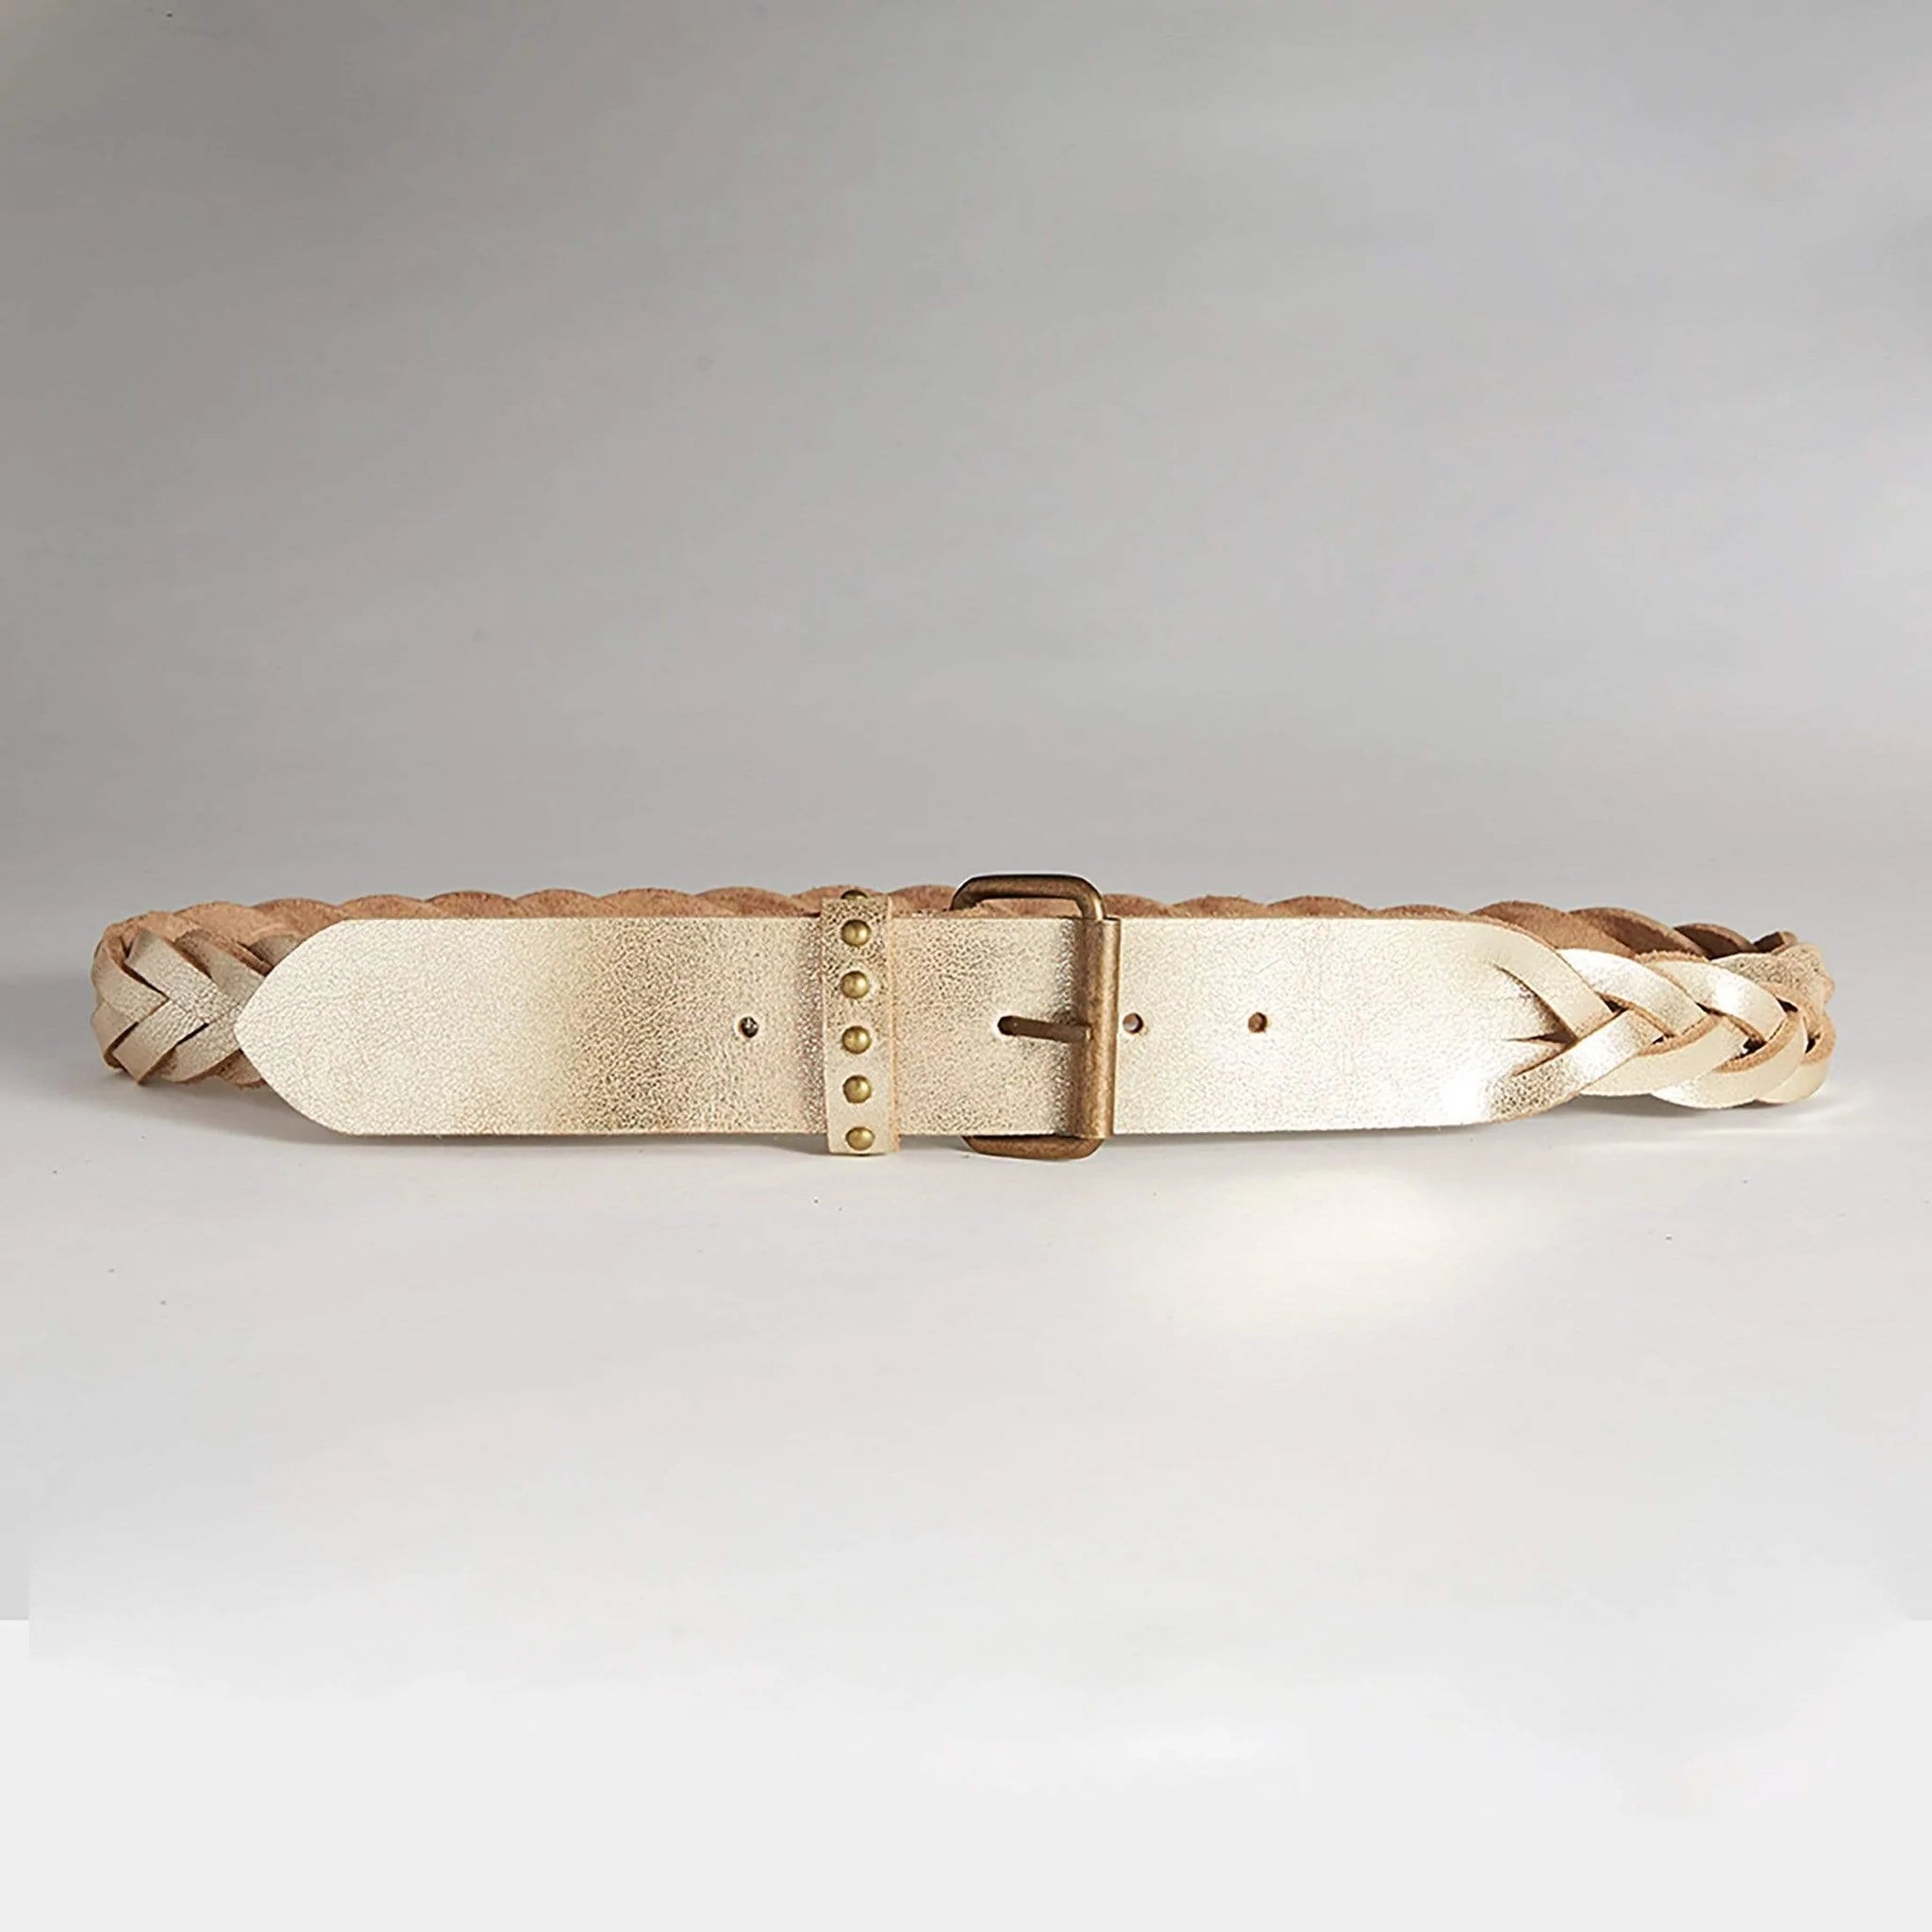 Shop Hollstar Clara Leather Belt in Gold by Caravan & Co. - Caravan & Co